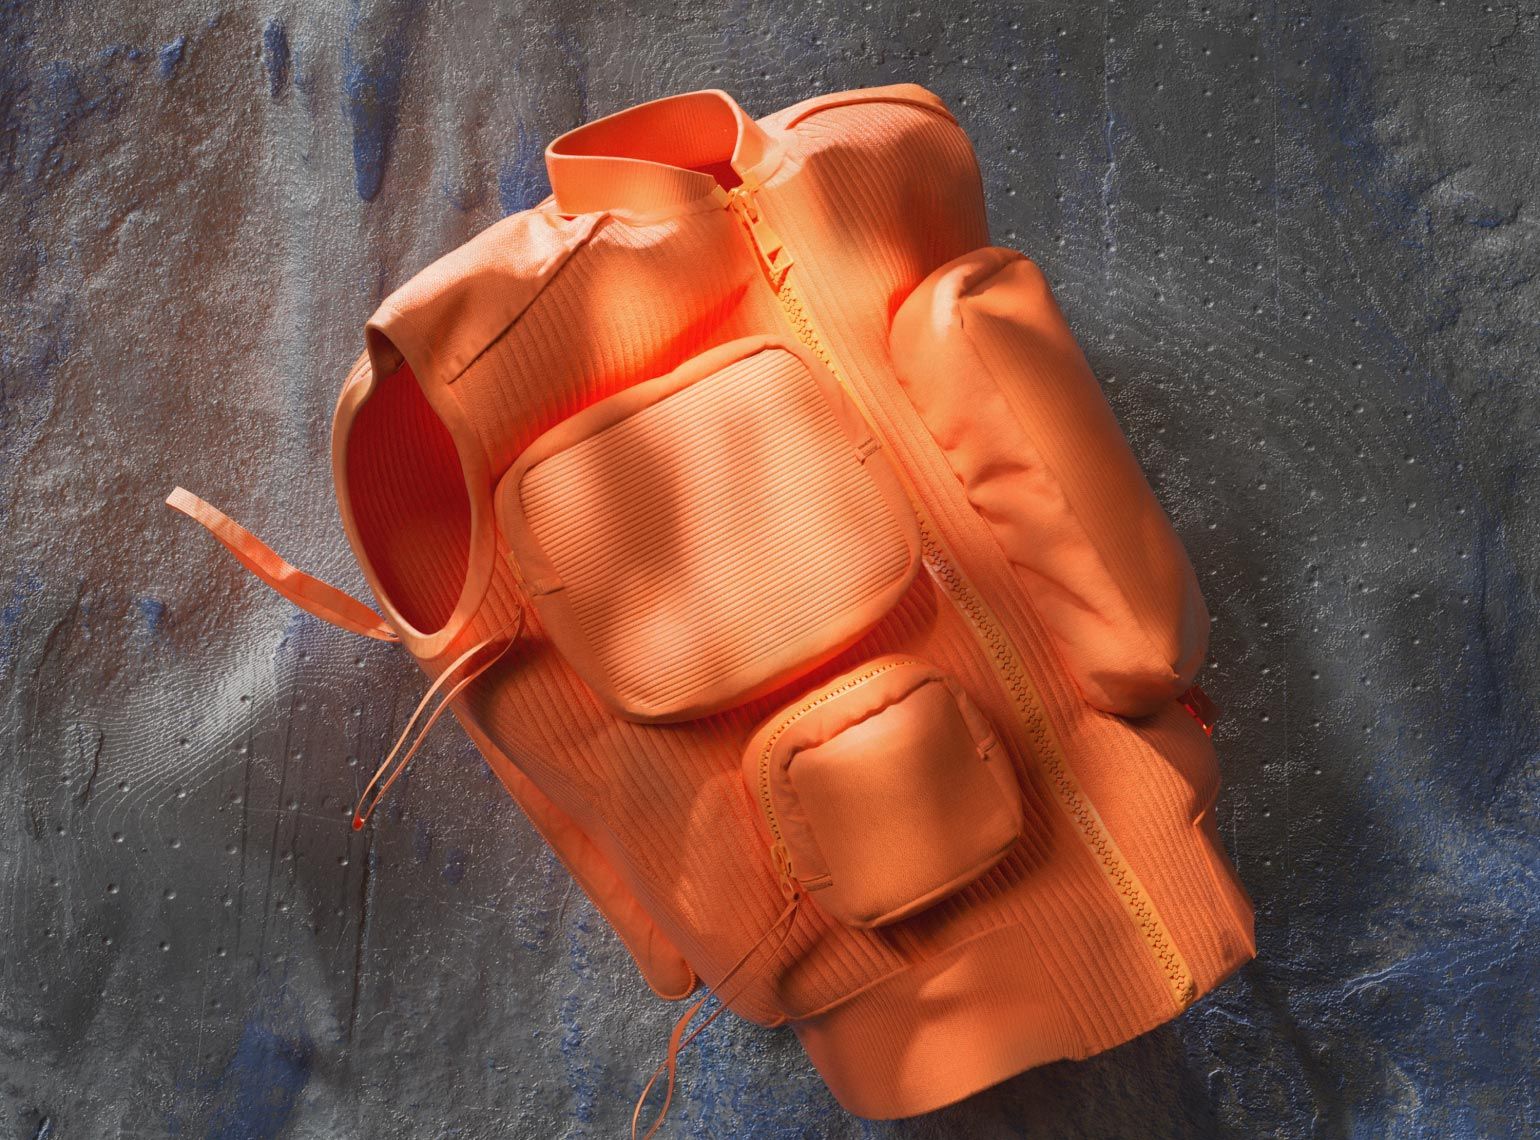 Louis Vuitton Orange Ribbed Utility Vest